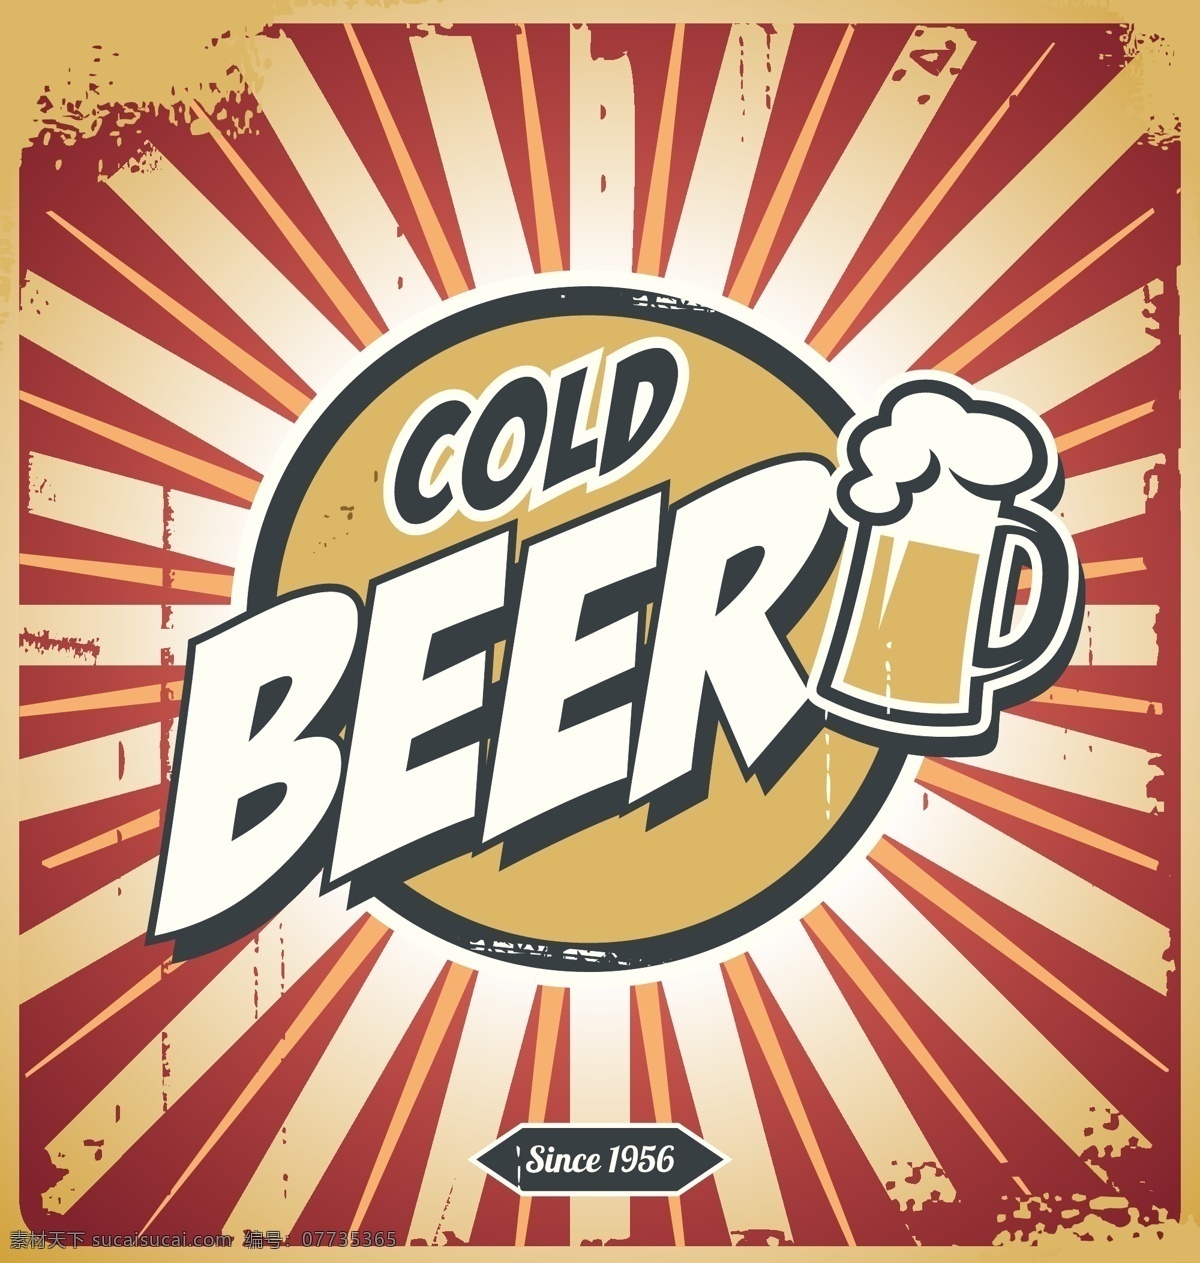 啤酒设计 啤酒 酒水 啤酒品牌 logo logo设计 标志设计 图标设计 标志 标识 啤酒logo 啤酒标志 啤酒标识 酒类 抽象背景 抽象设计 卡通背景 矢量设计 卡通设计 艺术设计 广告页 矢量